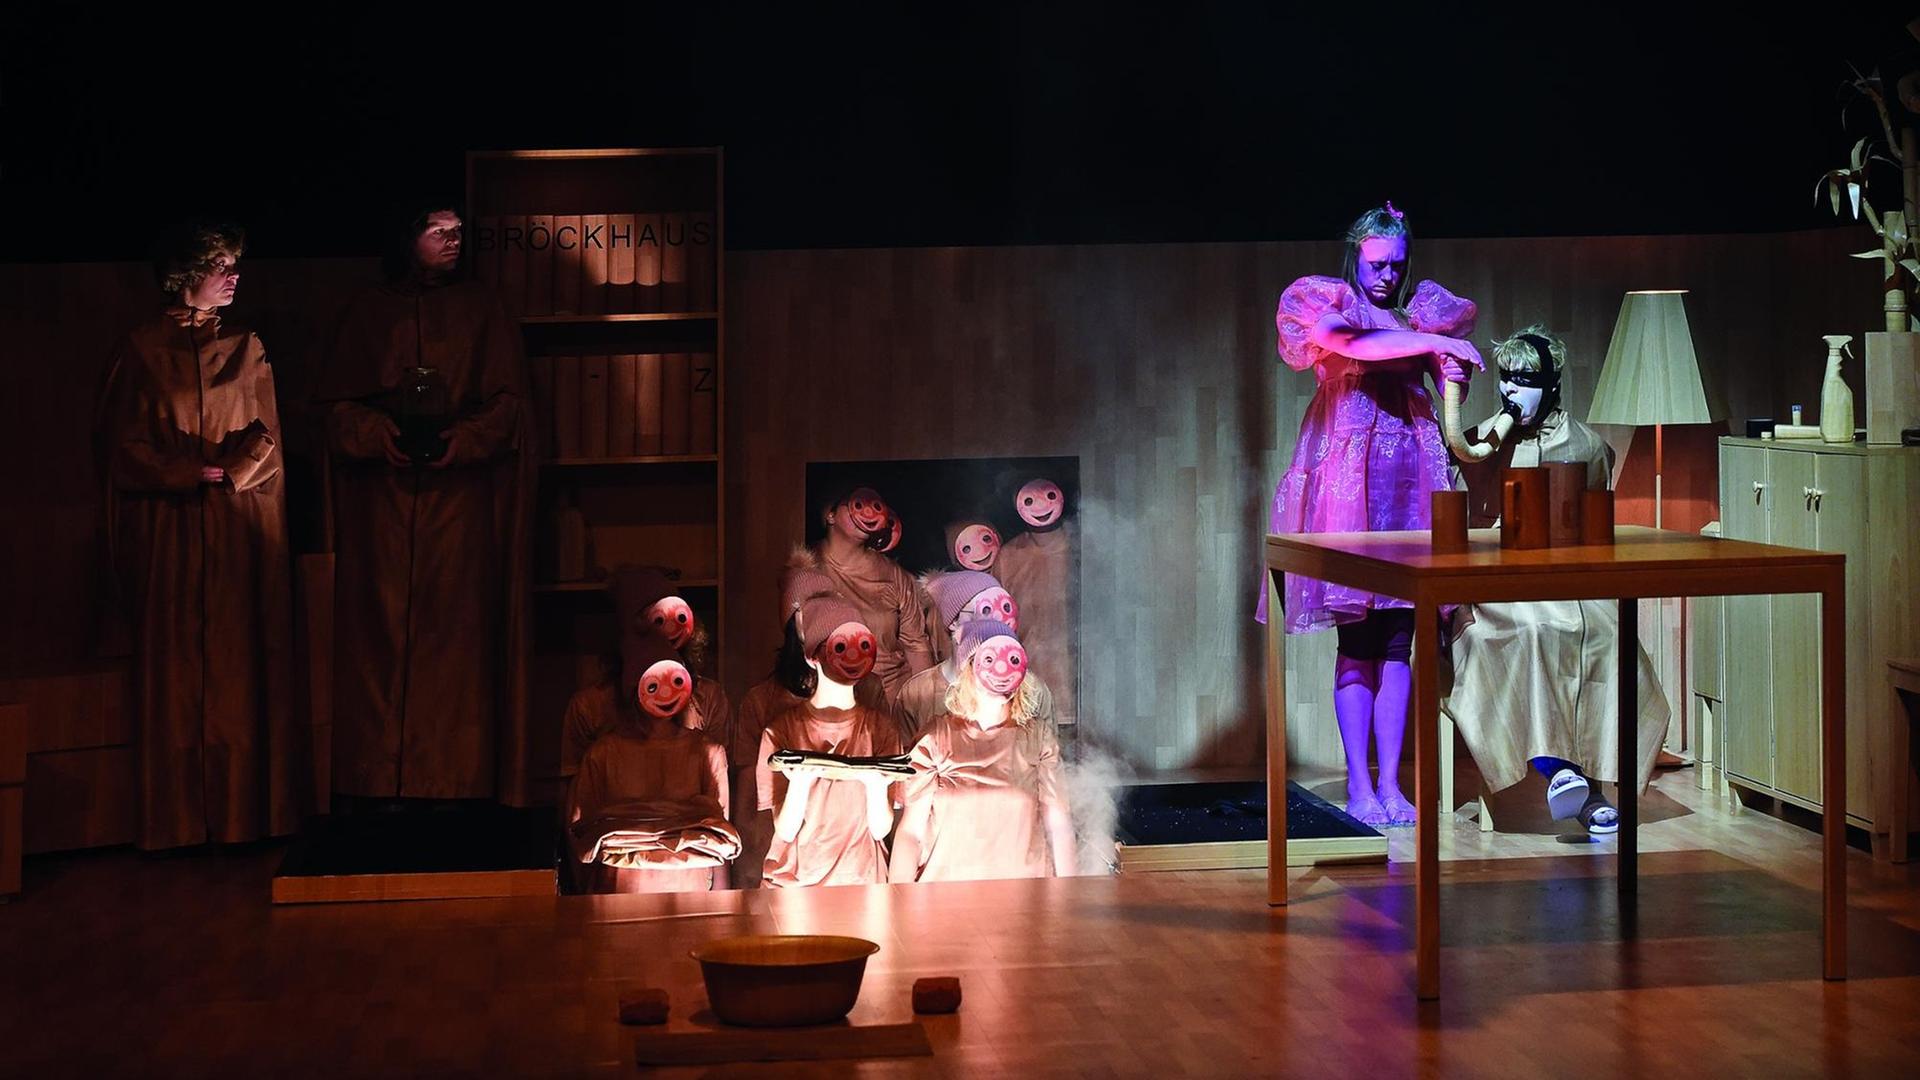 Eine Szene aus dem Theaterstück "Das Deutschland". Neben den vier Hauptdarstellern, sind zehn Personen mit roten, lachenden Masken, in Umhängen und langen Zipfelmützen zu sehen.